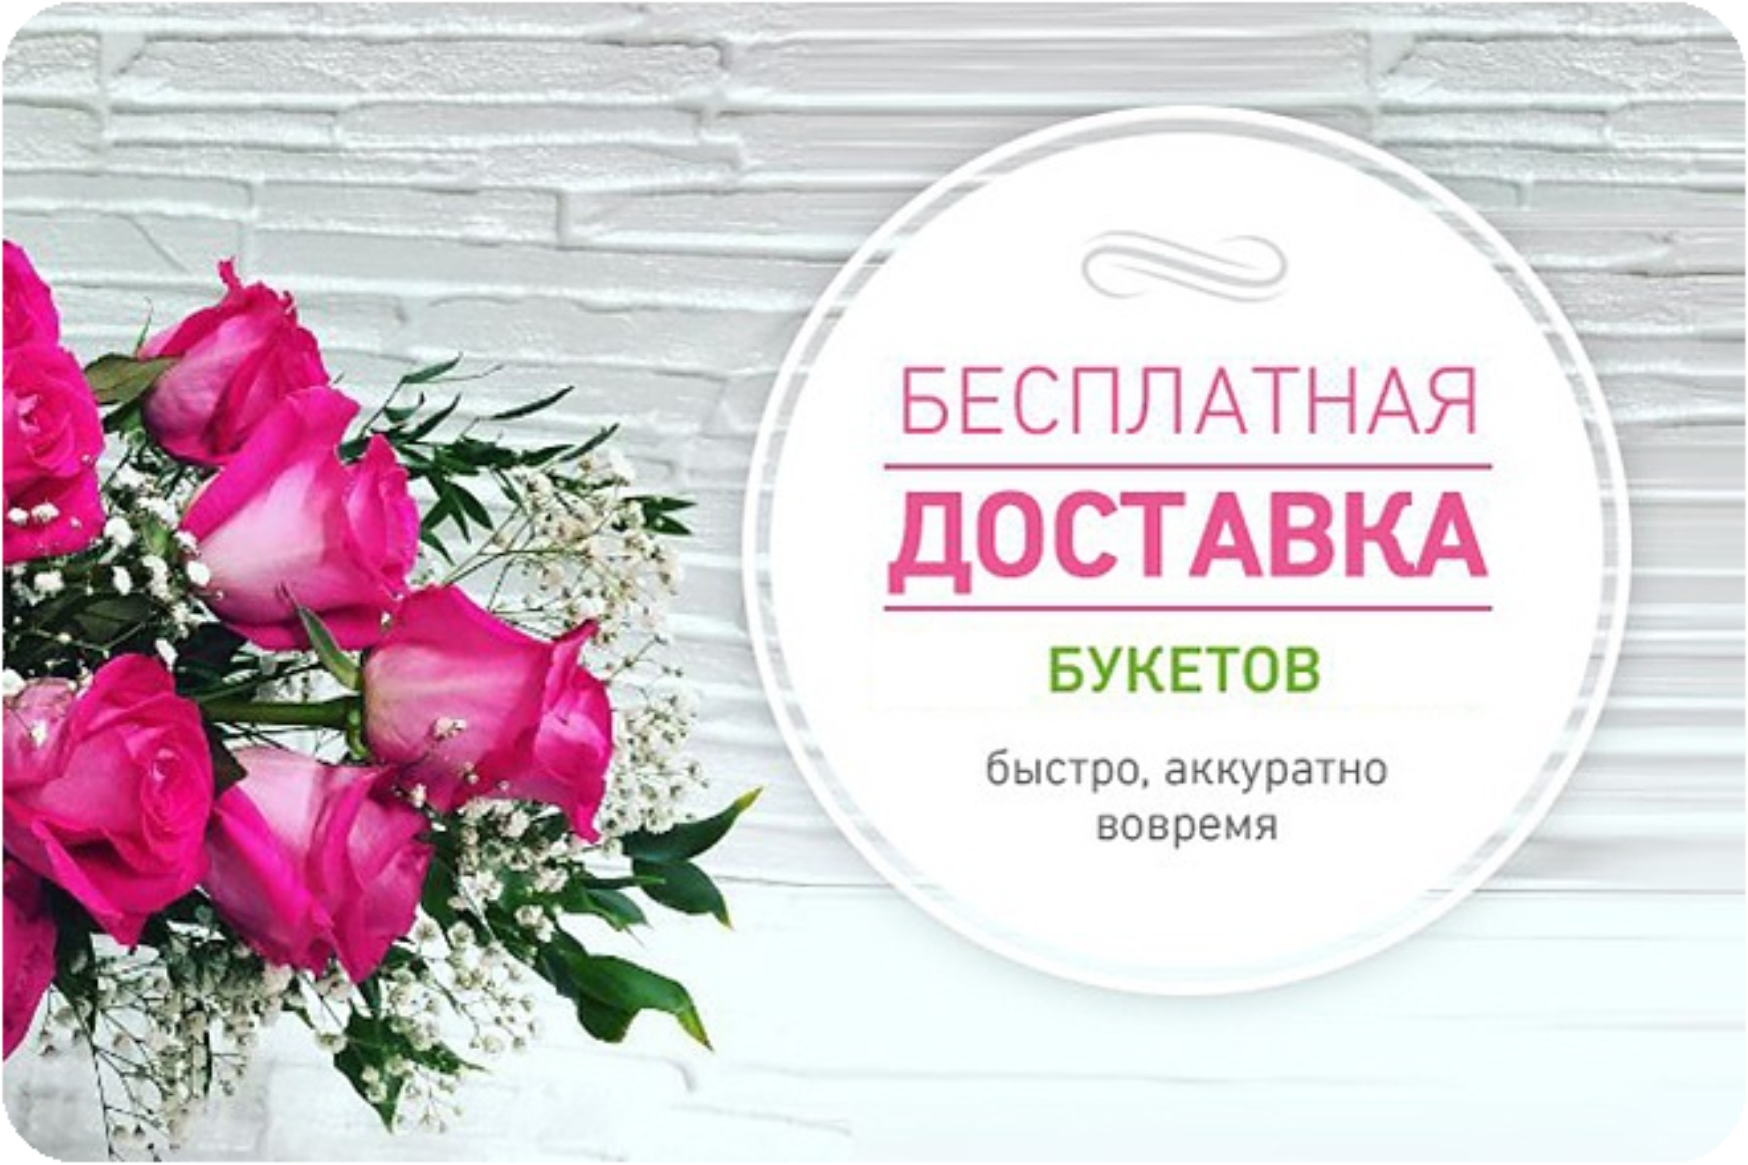 Реклама цветов. Реклама цветочного магазина. Баннер цветочного магазина. Цветы реклама. Дарите женщинам цветы акция